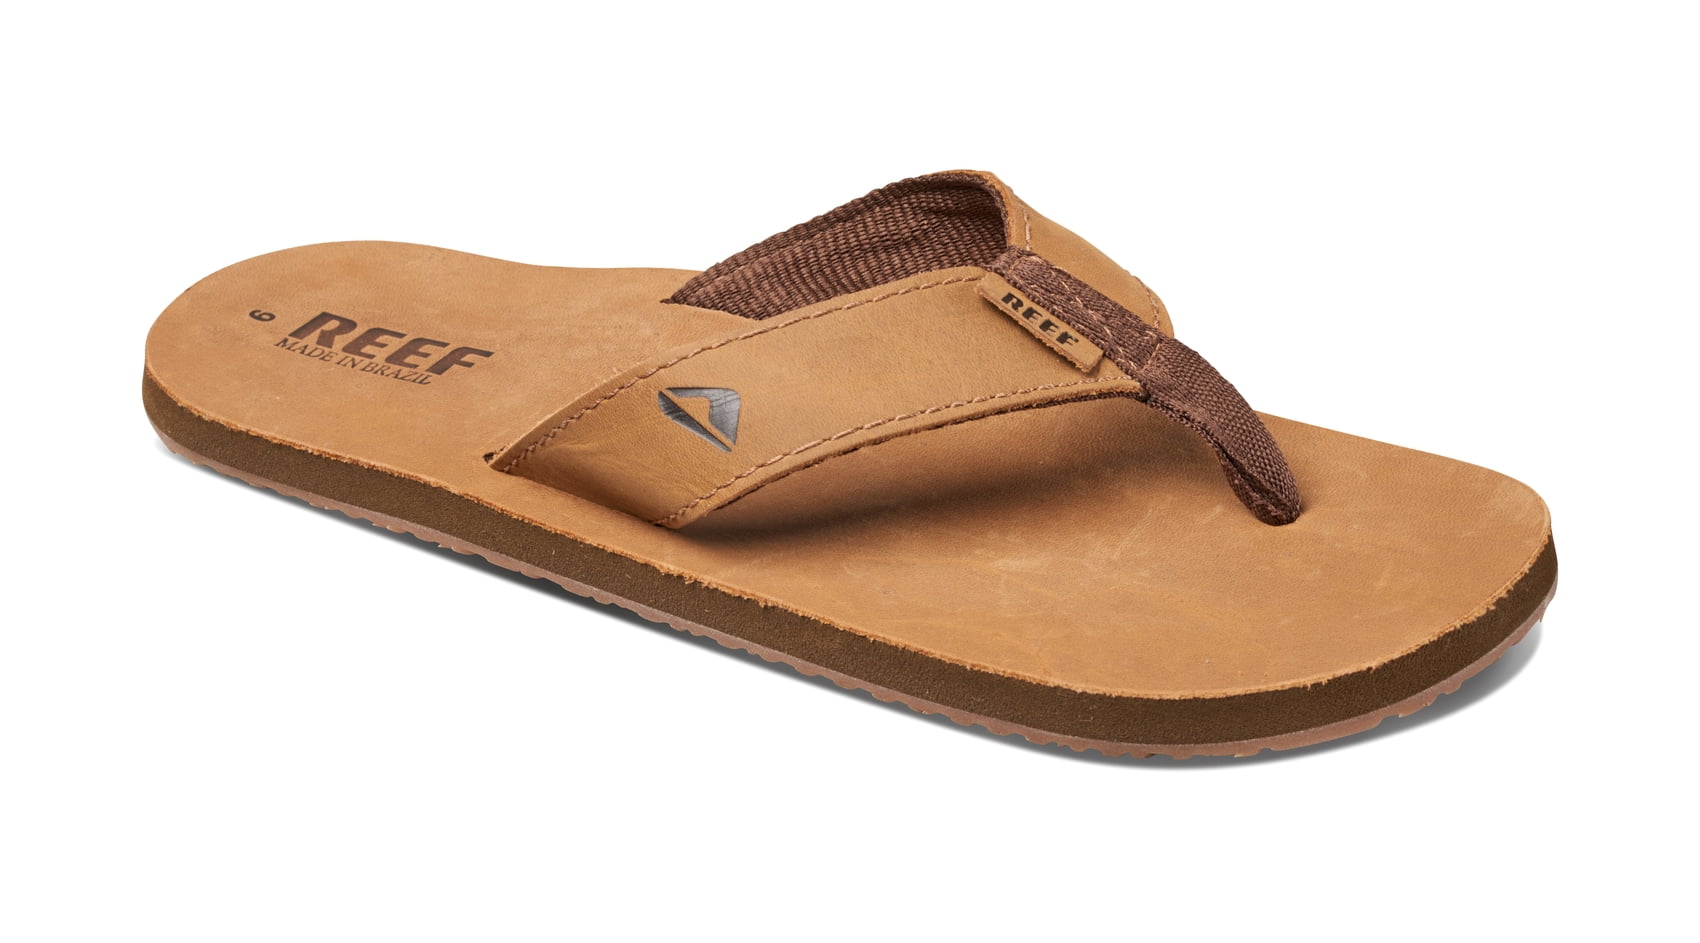 Negen Klant zoom Reef Men's Sandals Leather Smoothy, Bronze Brown, 13 - Walmart.com